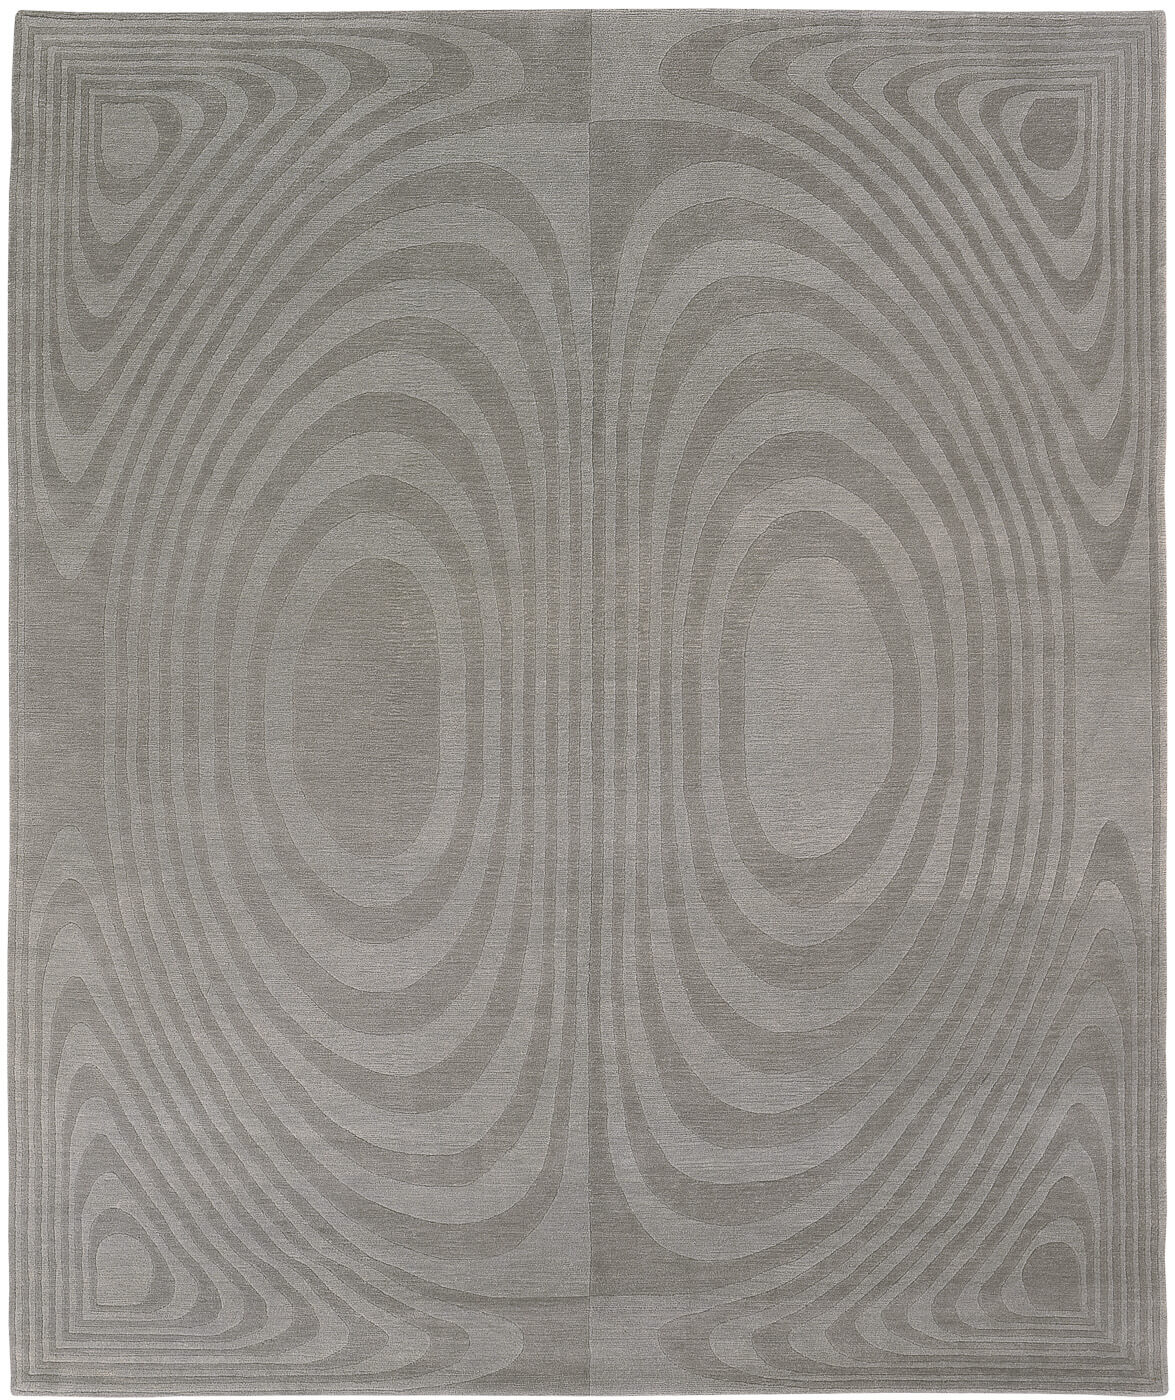 Art Grey Luxury Hand-woven Rug ☞ Size: 300 x 400 cm